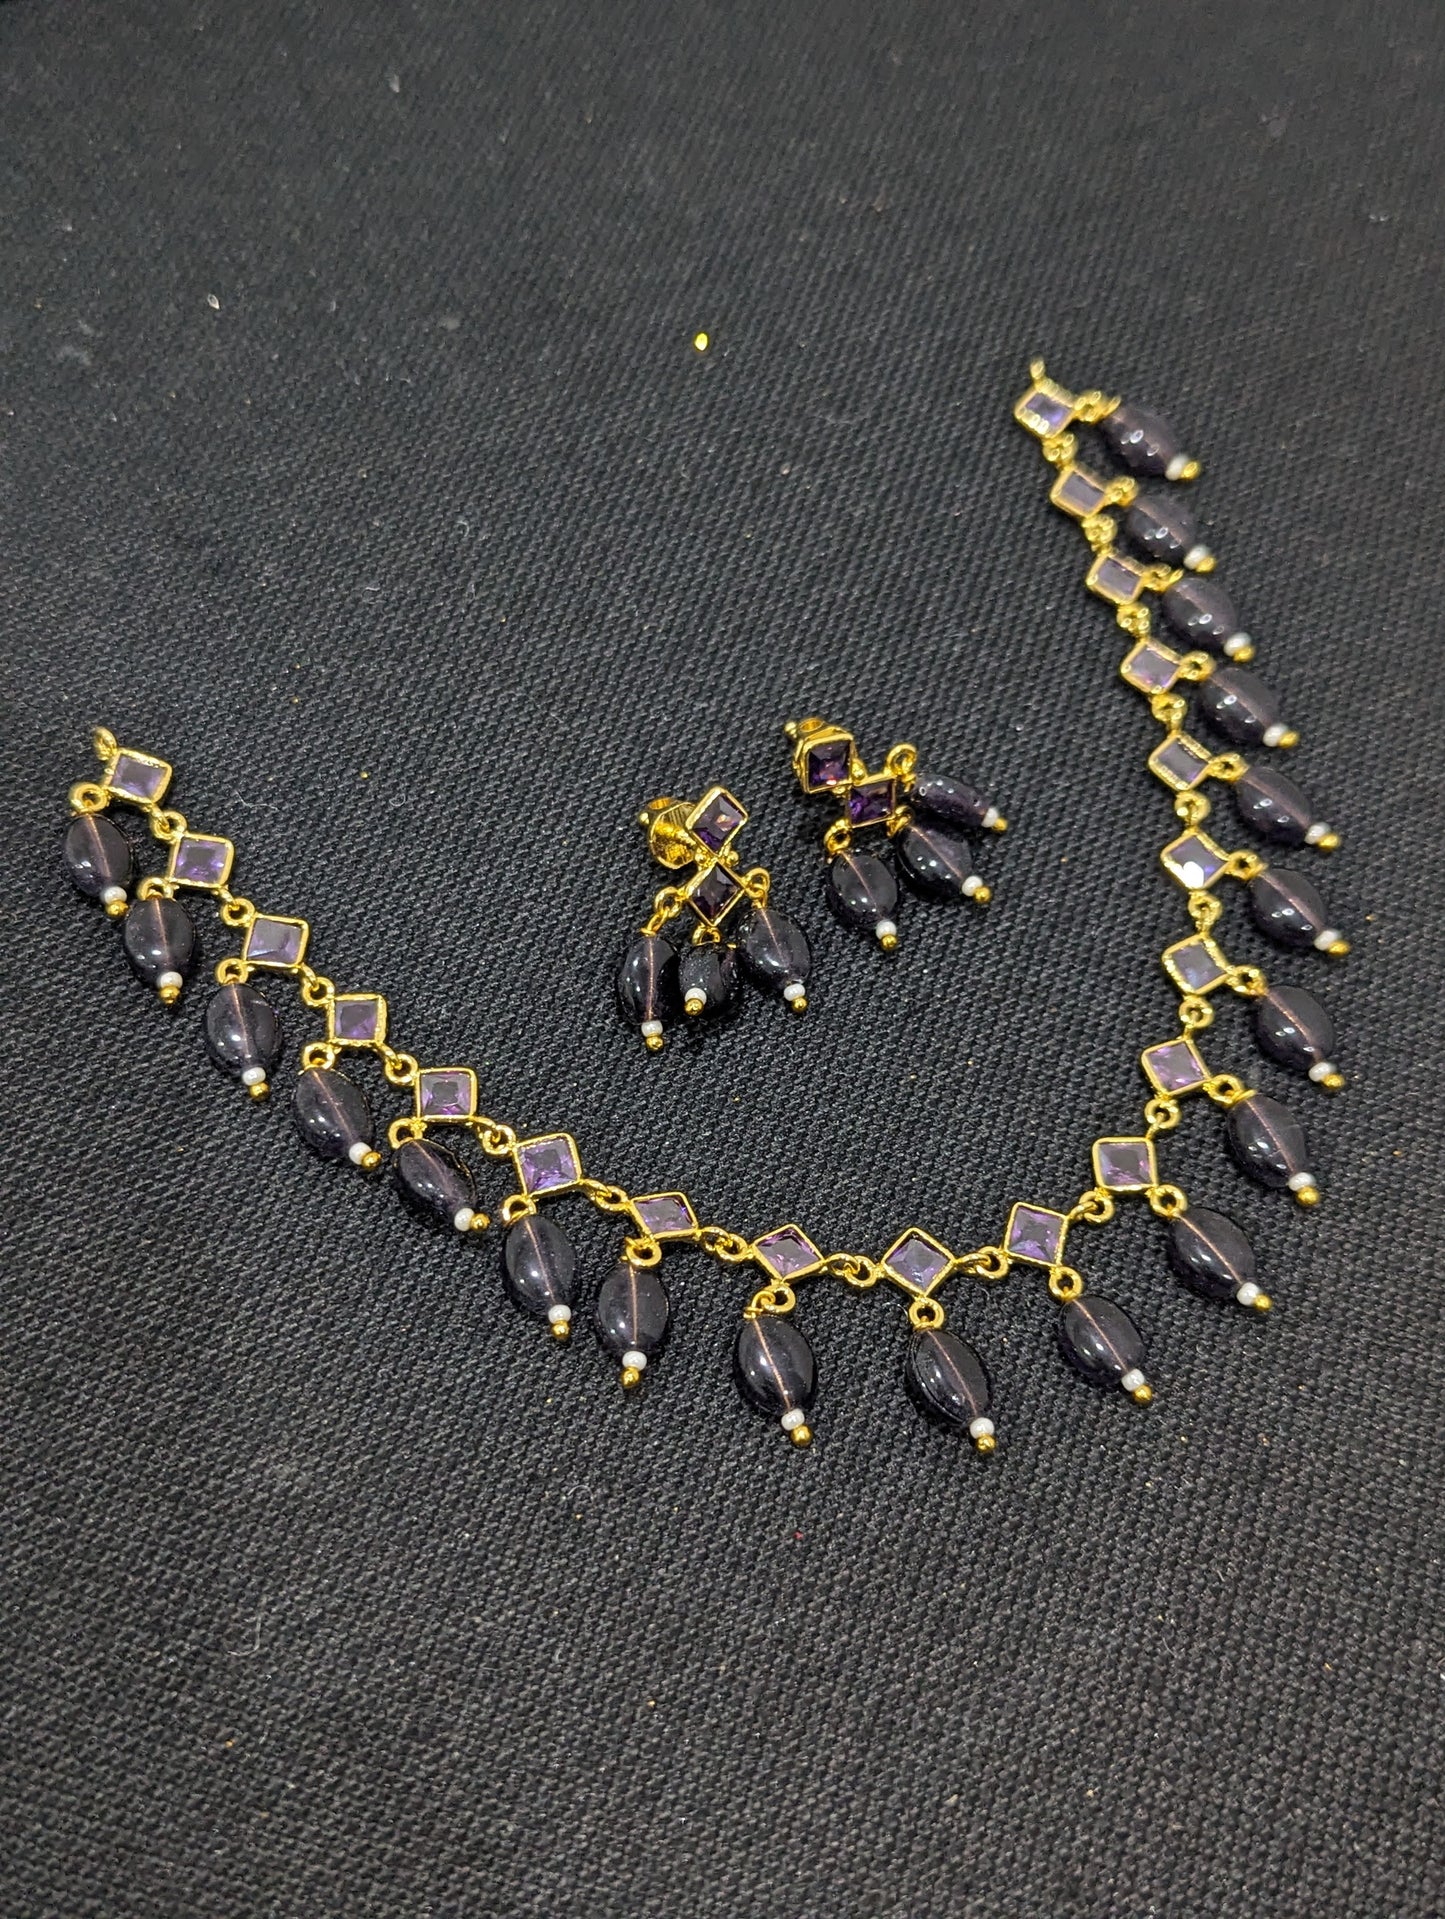 Bead dangle Elegant Choker Necklace and Earrings set